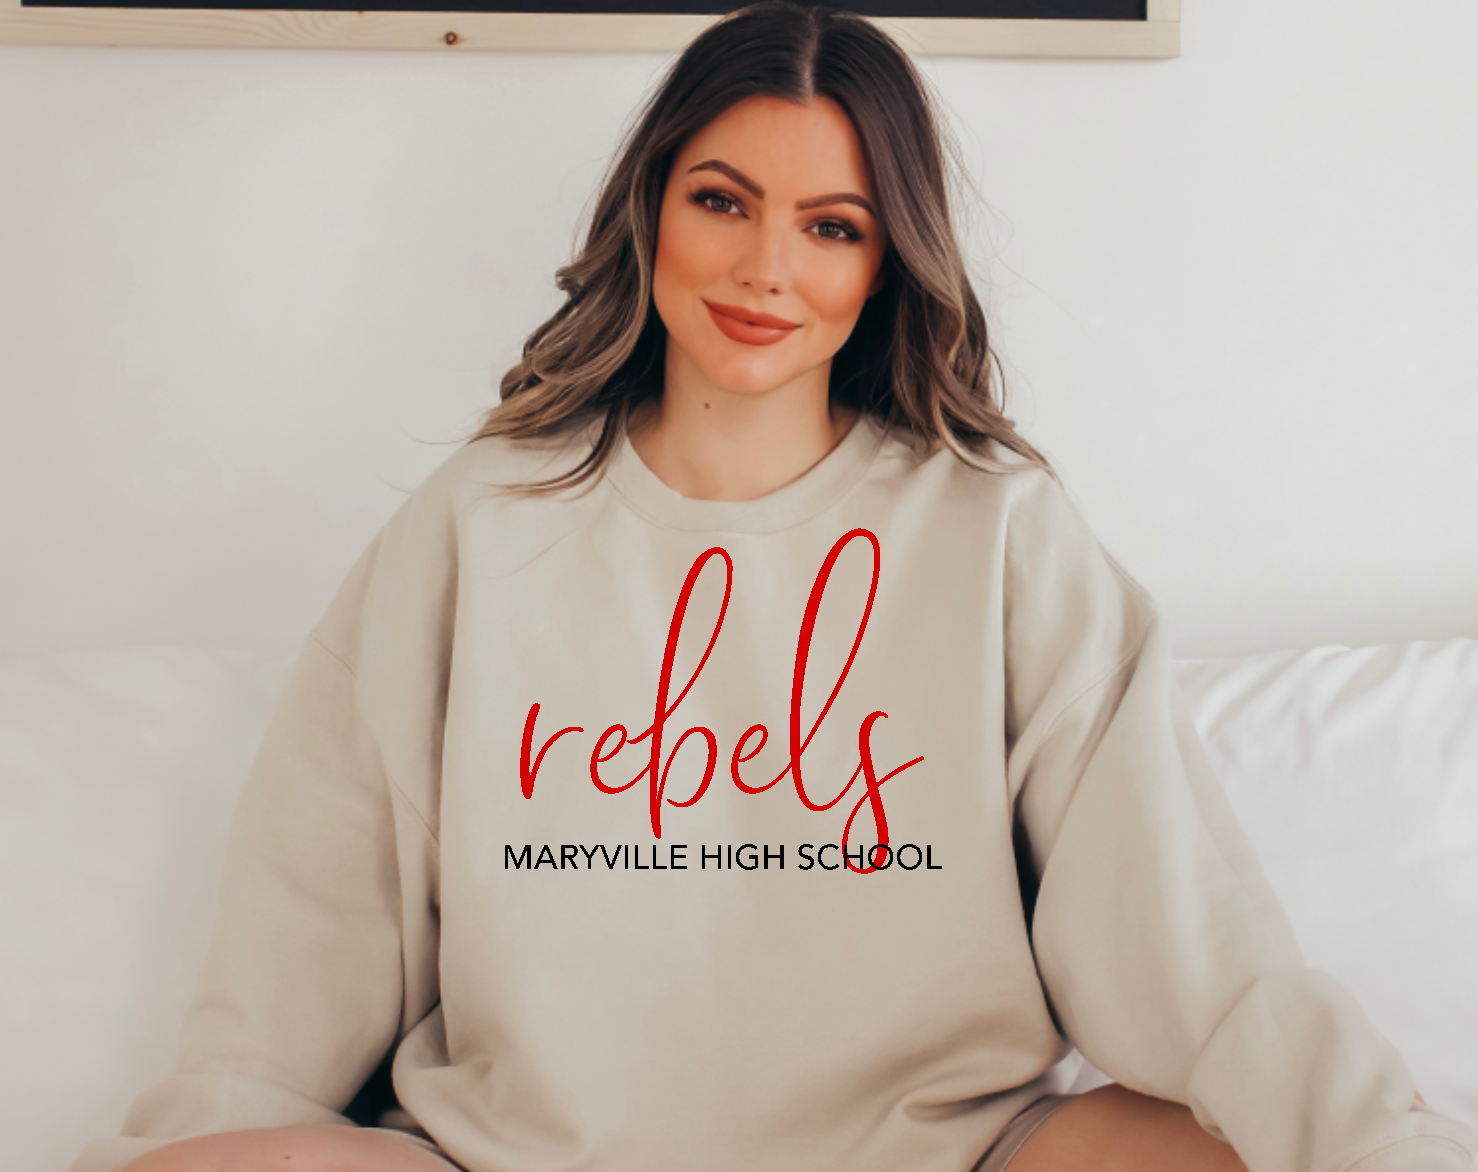 Maryville High School Rebels Crewneck Sweatshirt